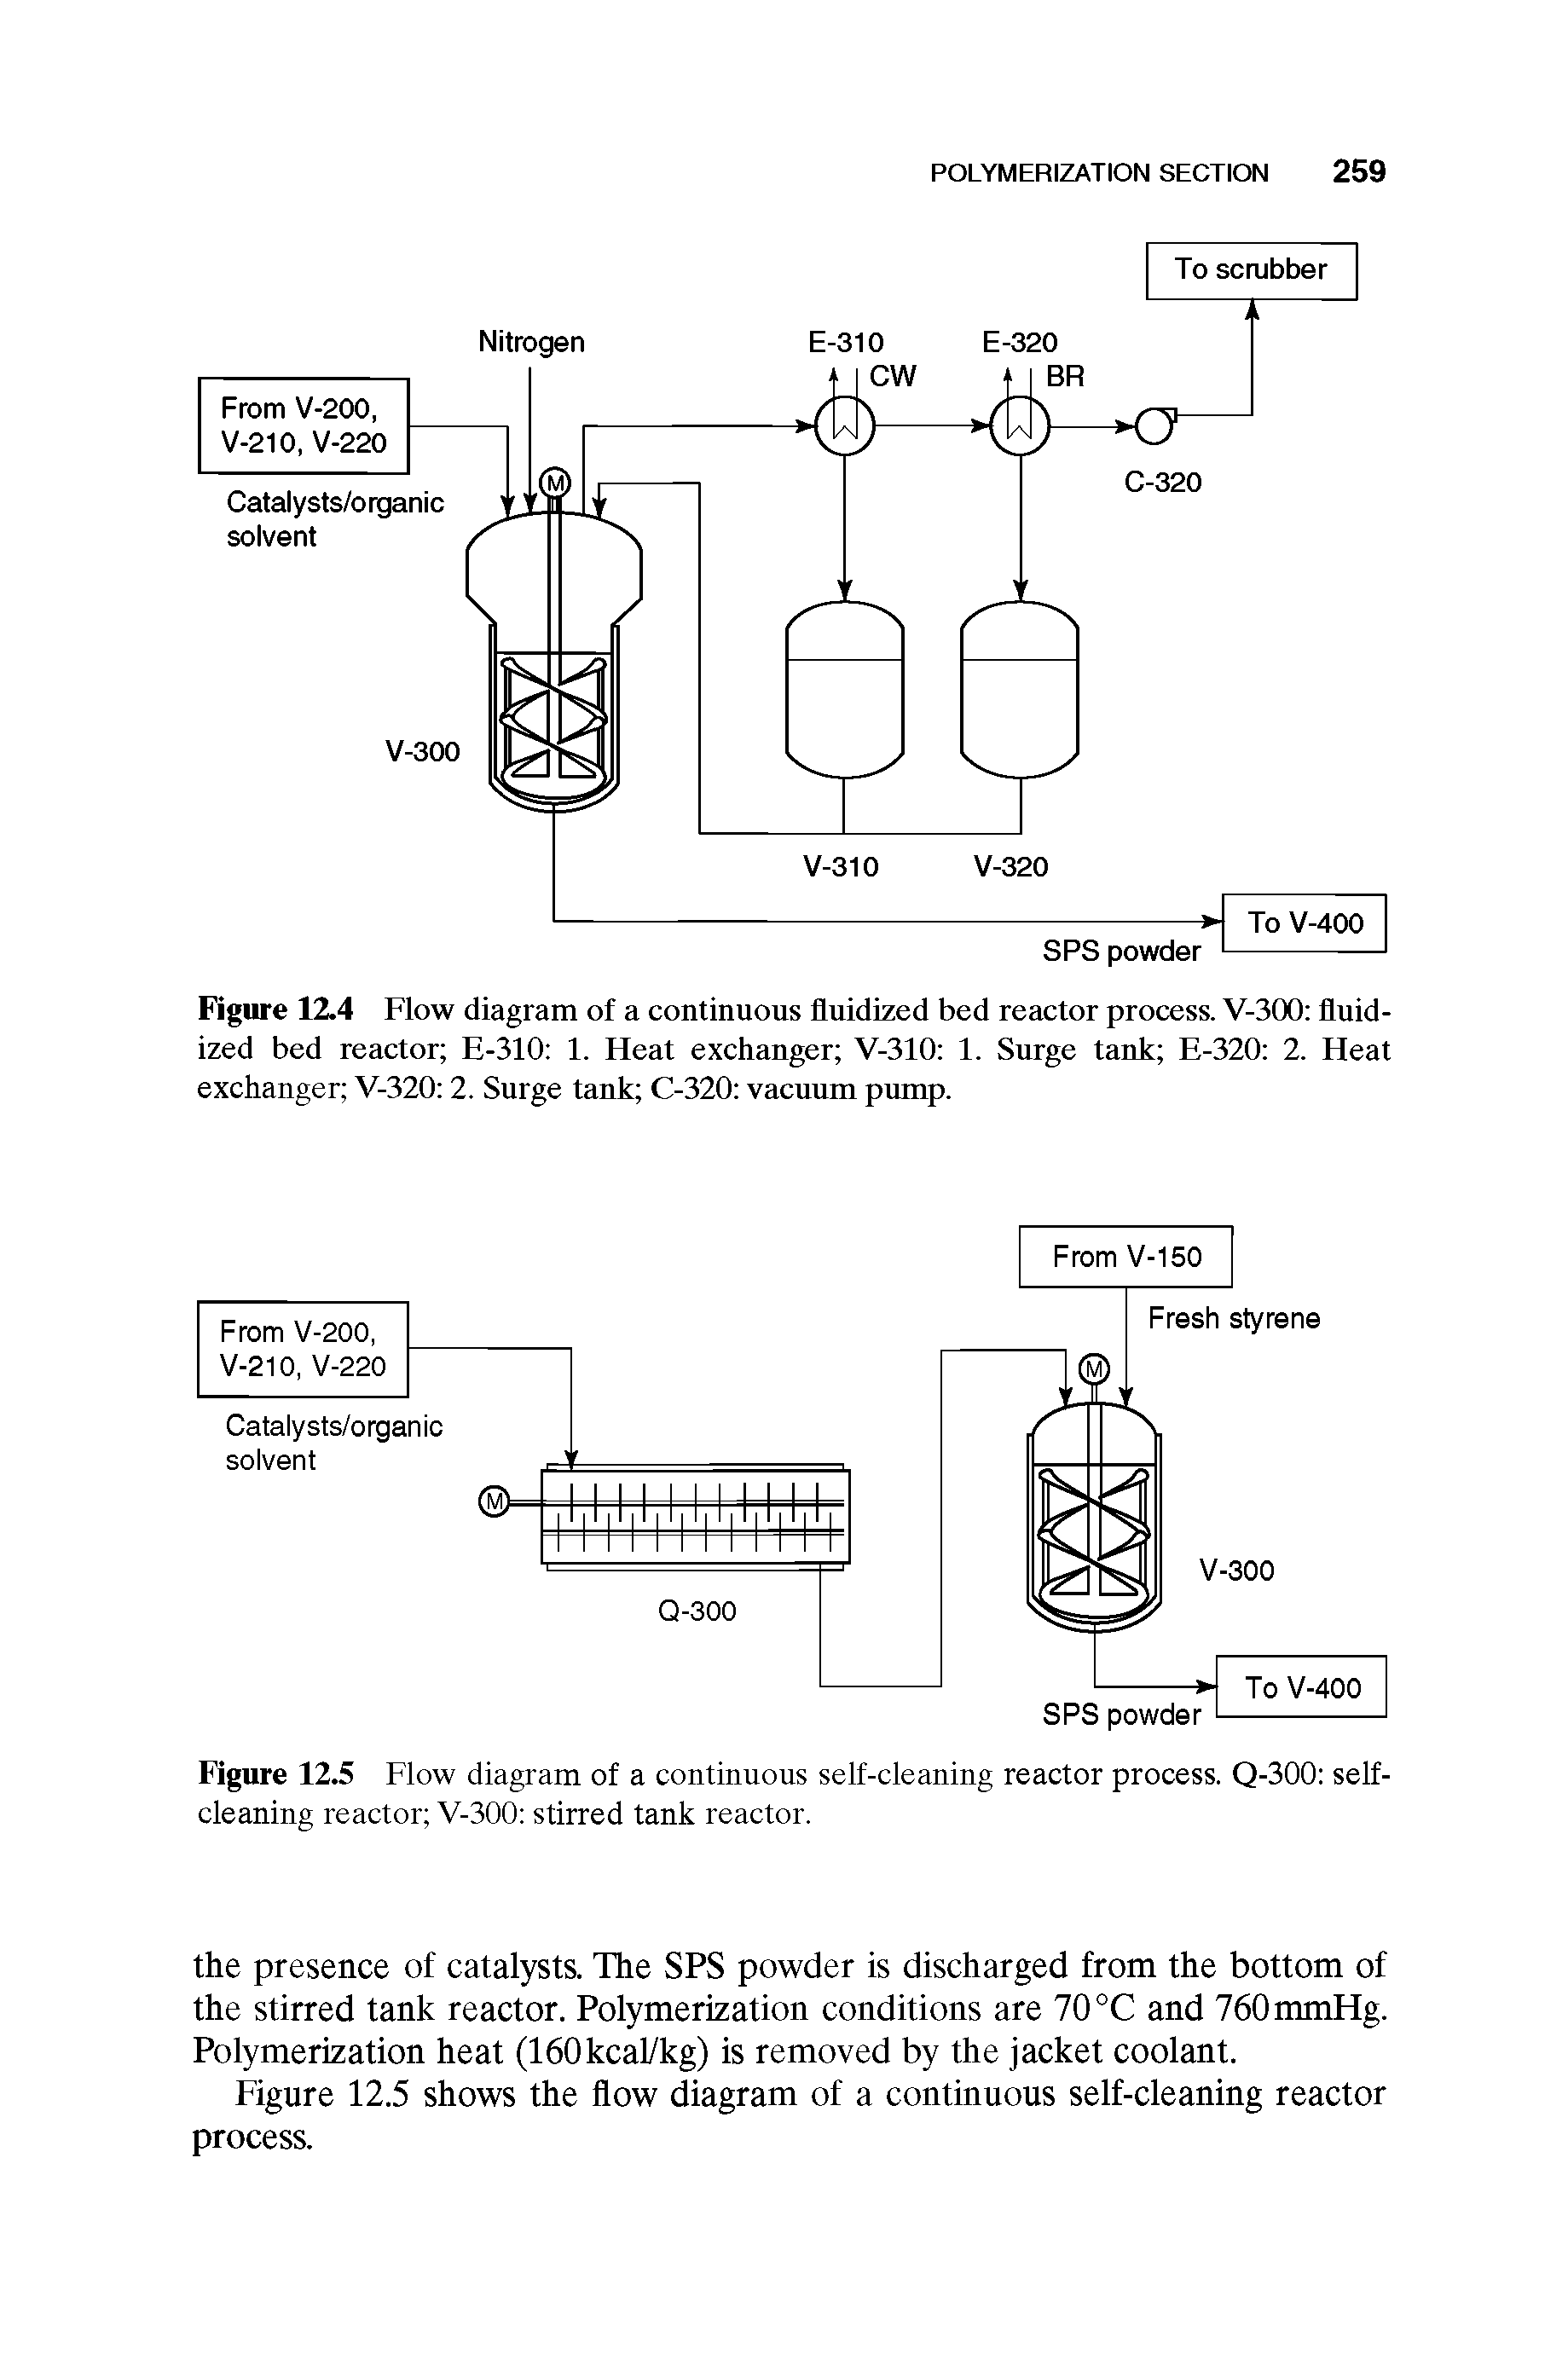 Figure 12.4 Flow diagram of a continuous fluidized bed reactor process. V-300 fluidized bed reactor E-310 1. Fleat exchanger V-310 1. Surge tank E-320 2. Heat exchanger V-320 2. Surge tank C-320 vacuum pump.